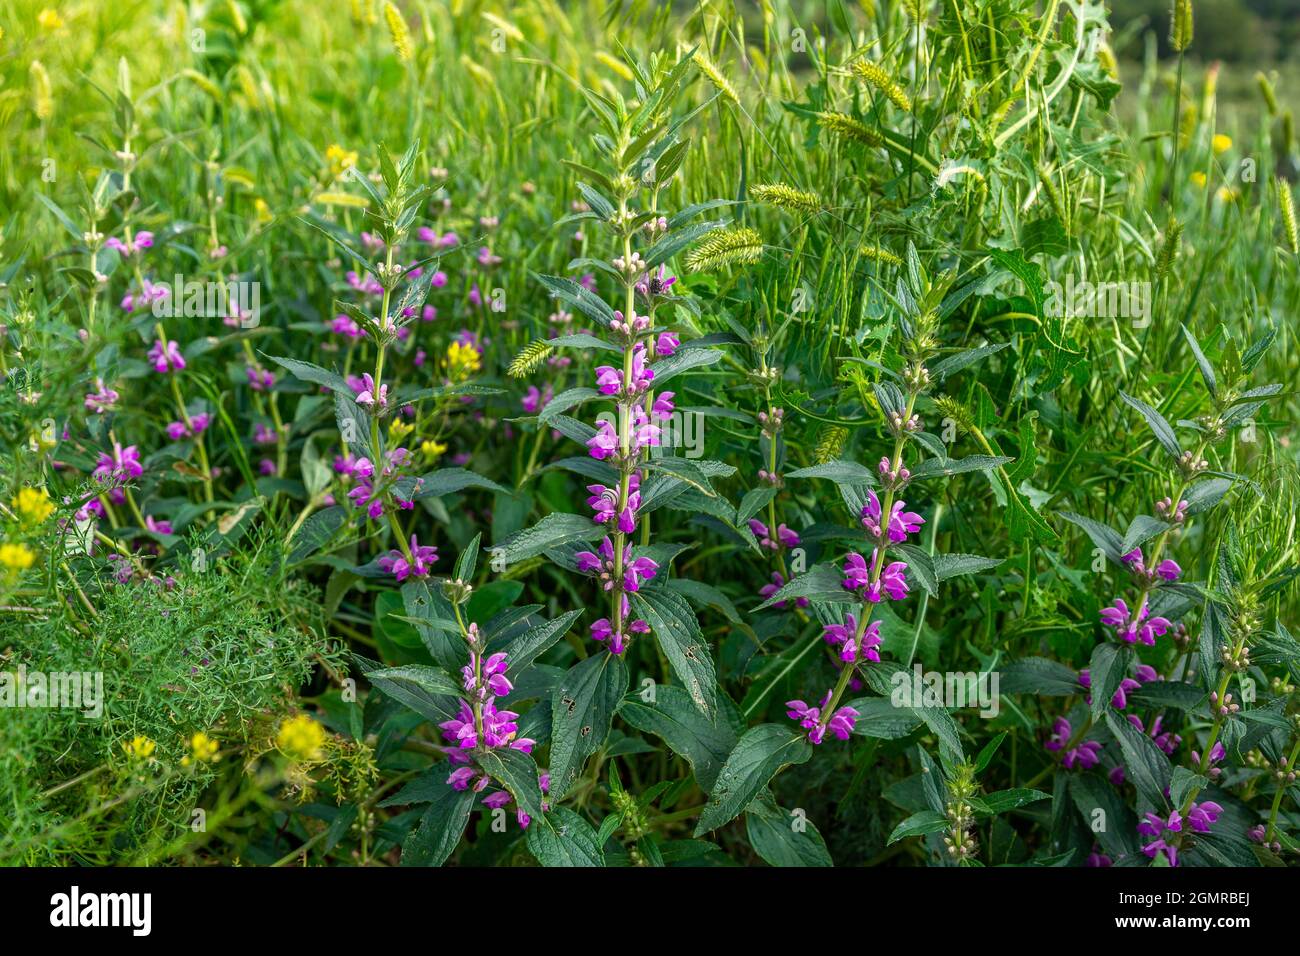 Medicinal plant Zopnik lat. Phlomis tuberosa. Flowering plant in natural  Stock Photo